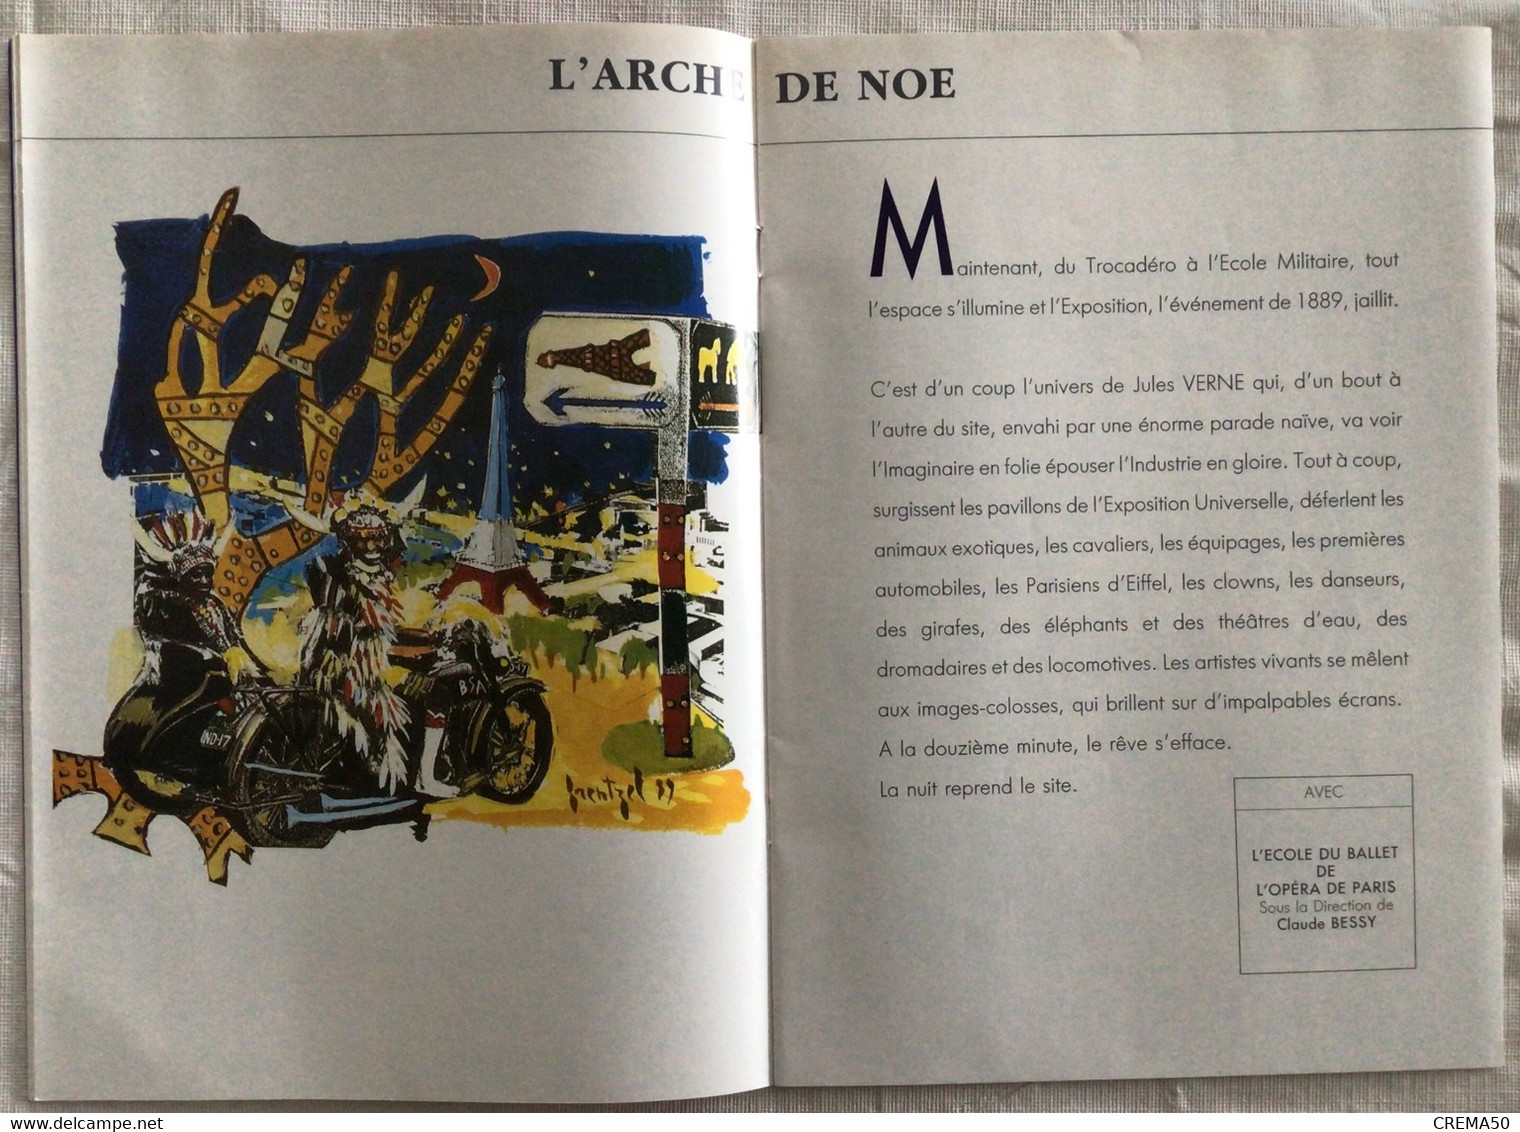 PROGRAMME: PARIS 89 - La mairie de Paris 1989 - Aznavour: Jonny Hallyday: Nougaro: Domingo